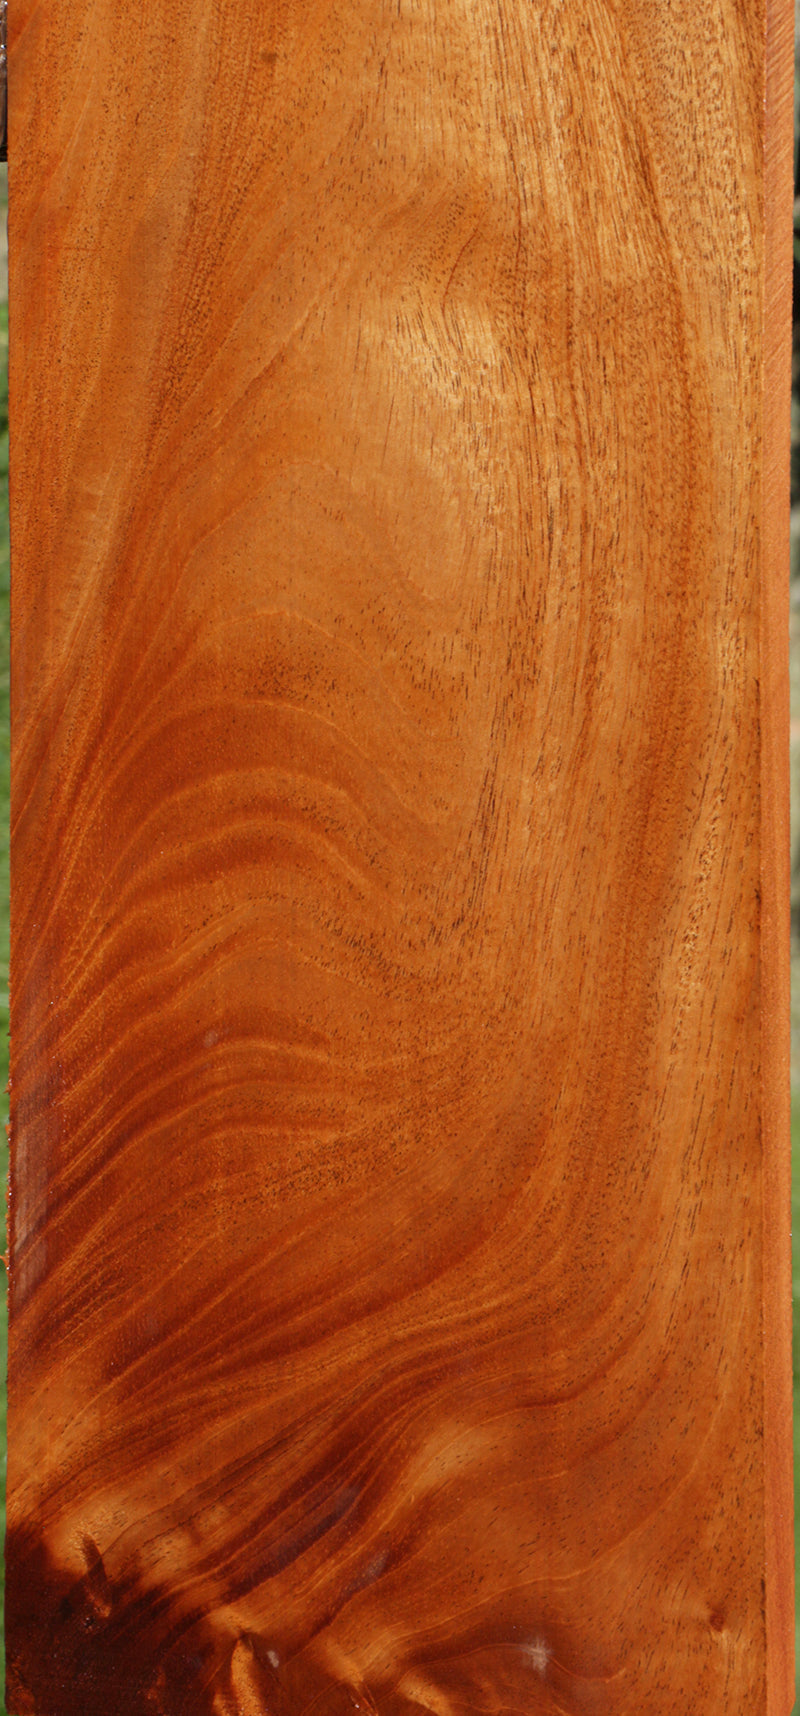 Extra Fancy Crotchwood Honduras Mahogany Lumber